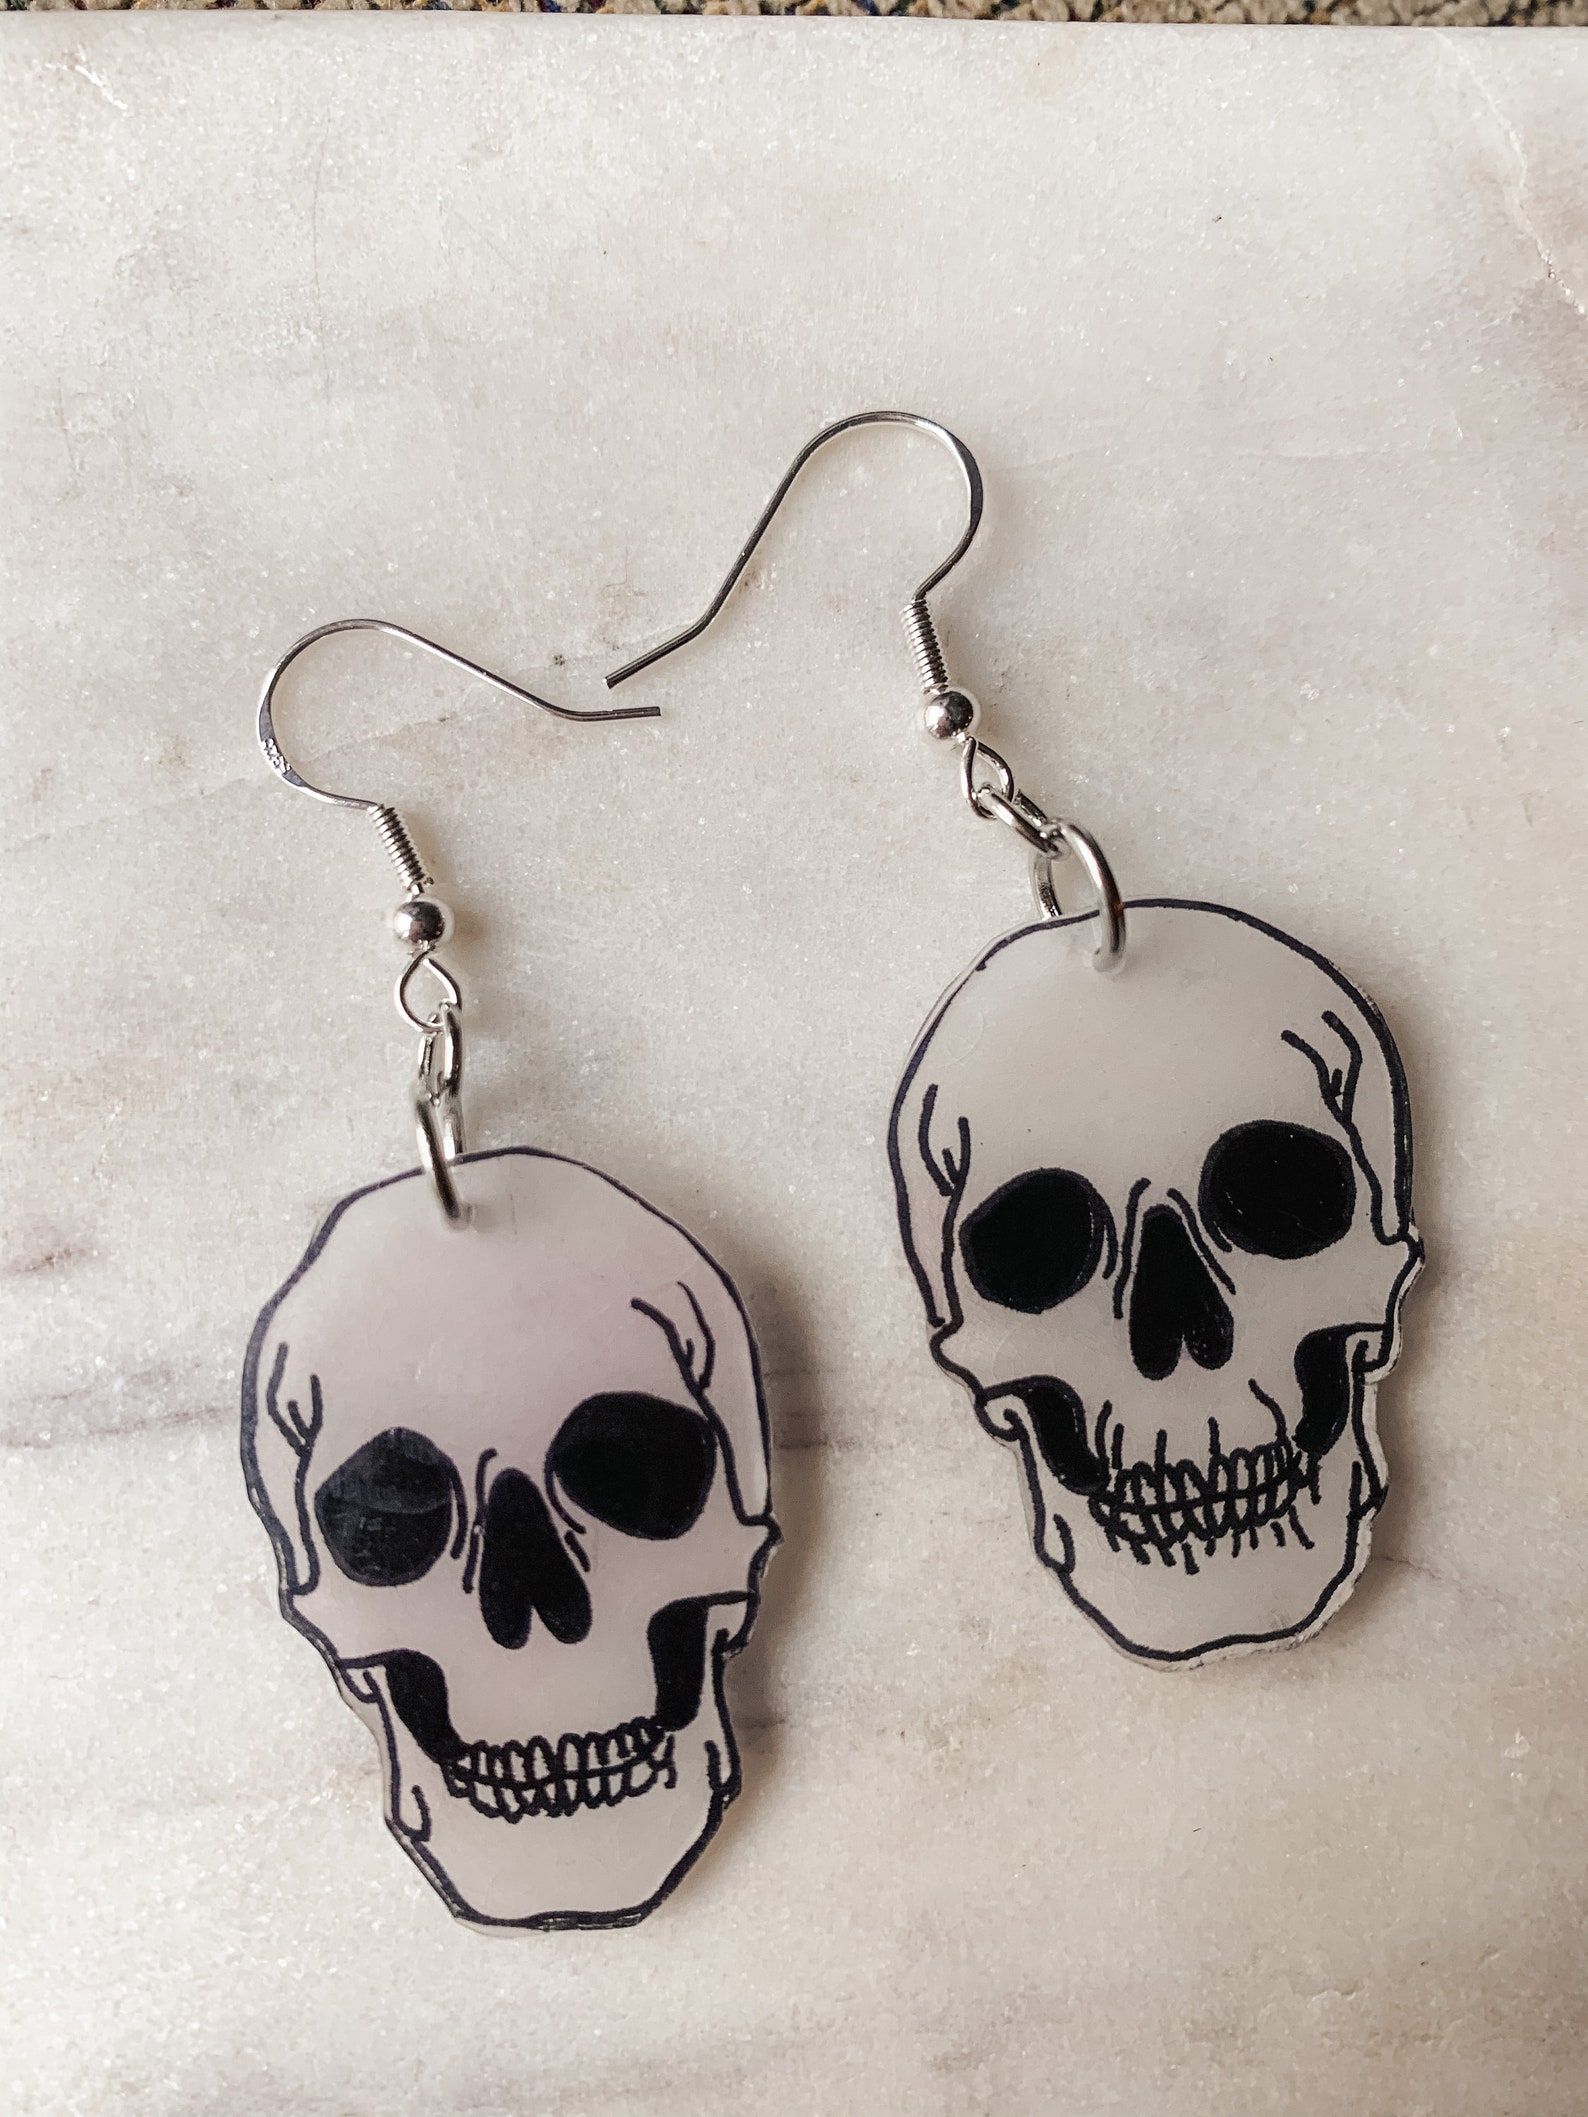 Handmade Skull Shrinky Dink Earrings | Etsy